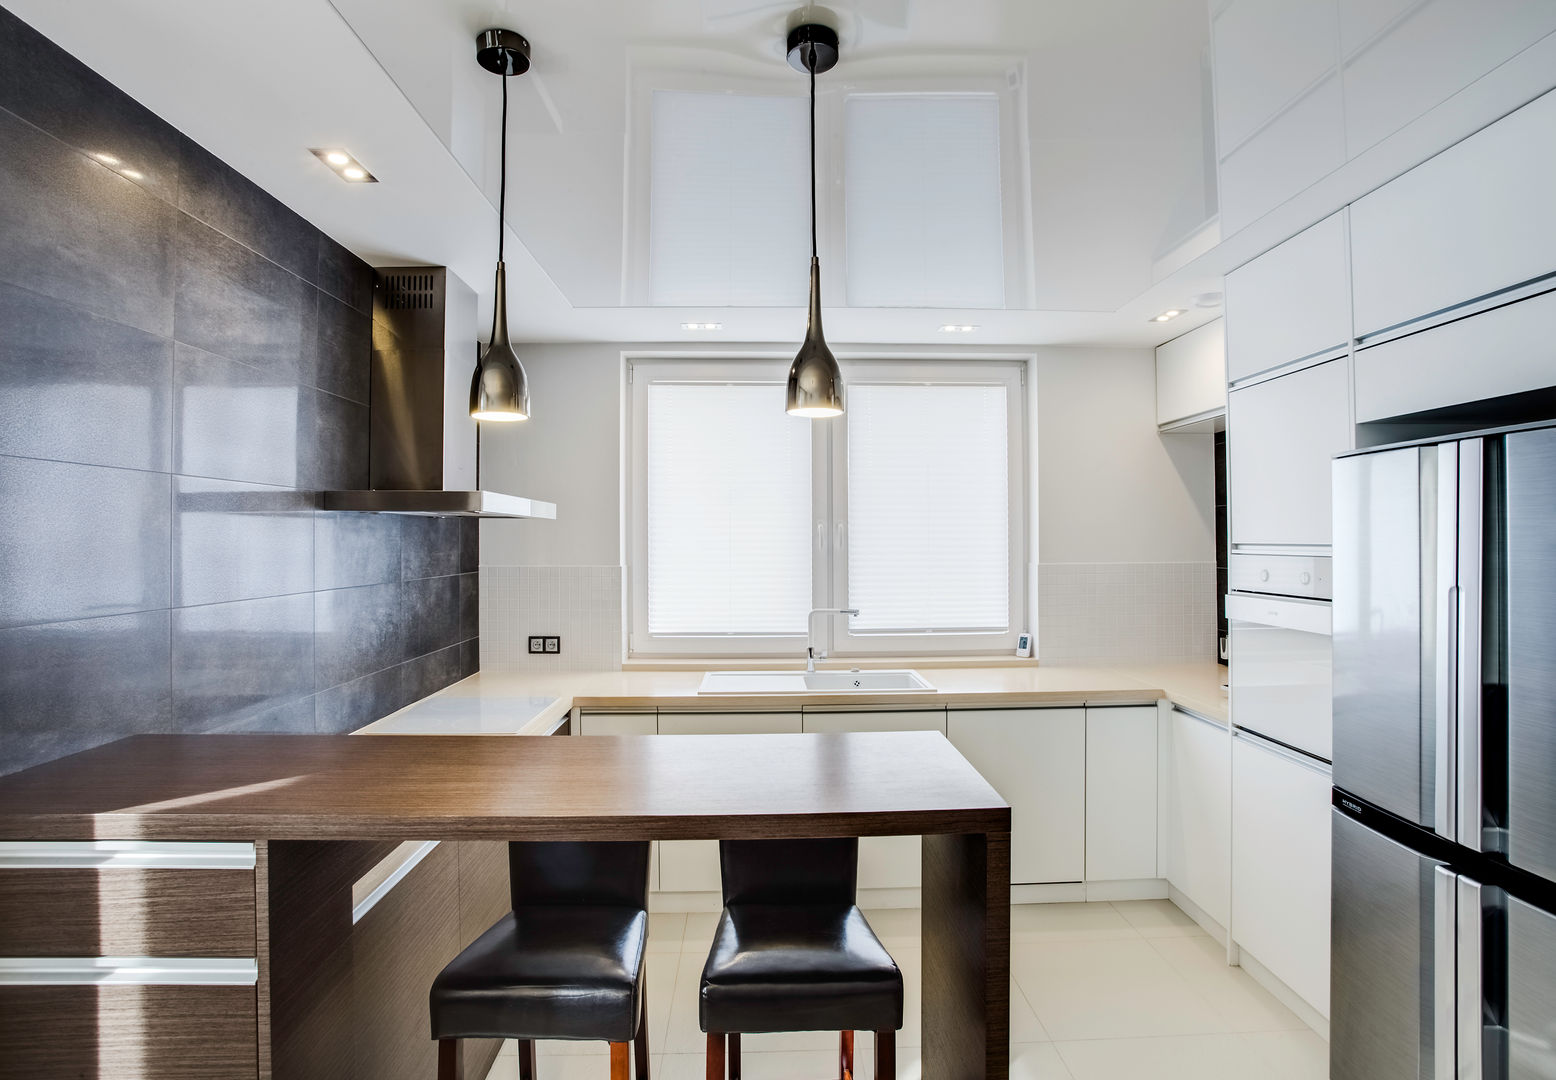 odcienie S Z A R O Ś C I, DK architektura wnętrz DK architektura wnętrz Modern style kitchen